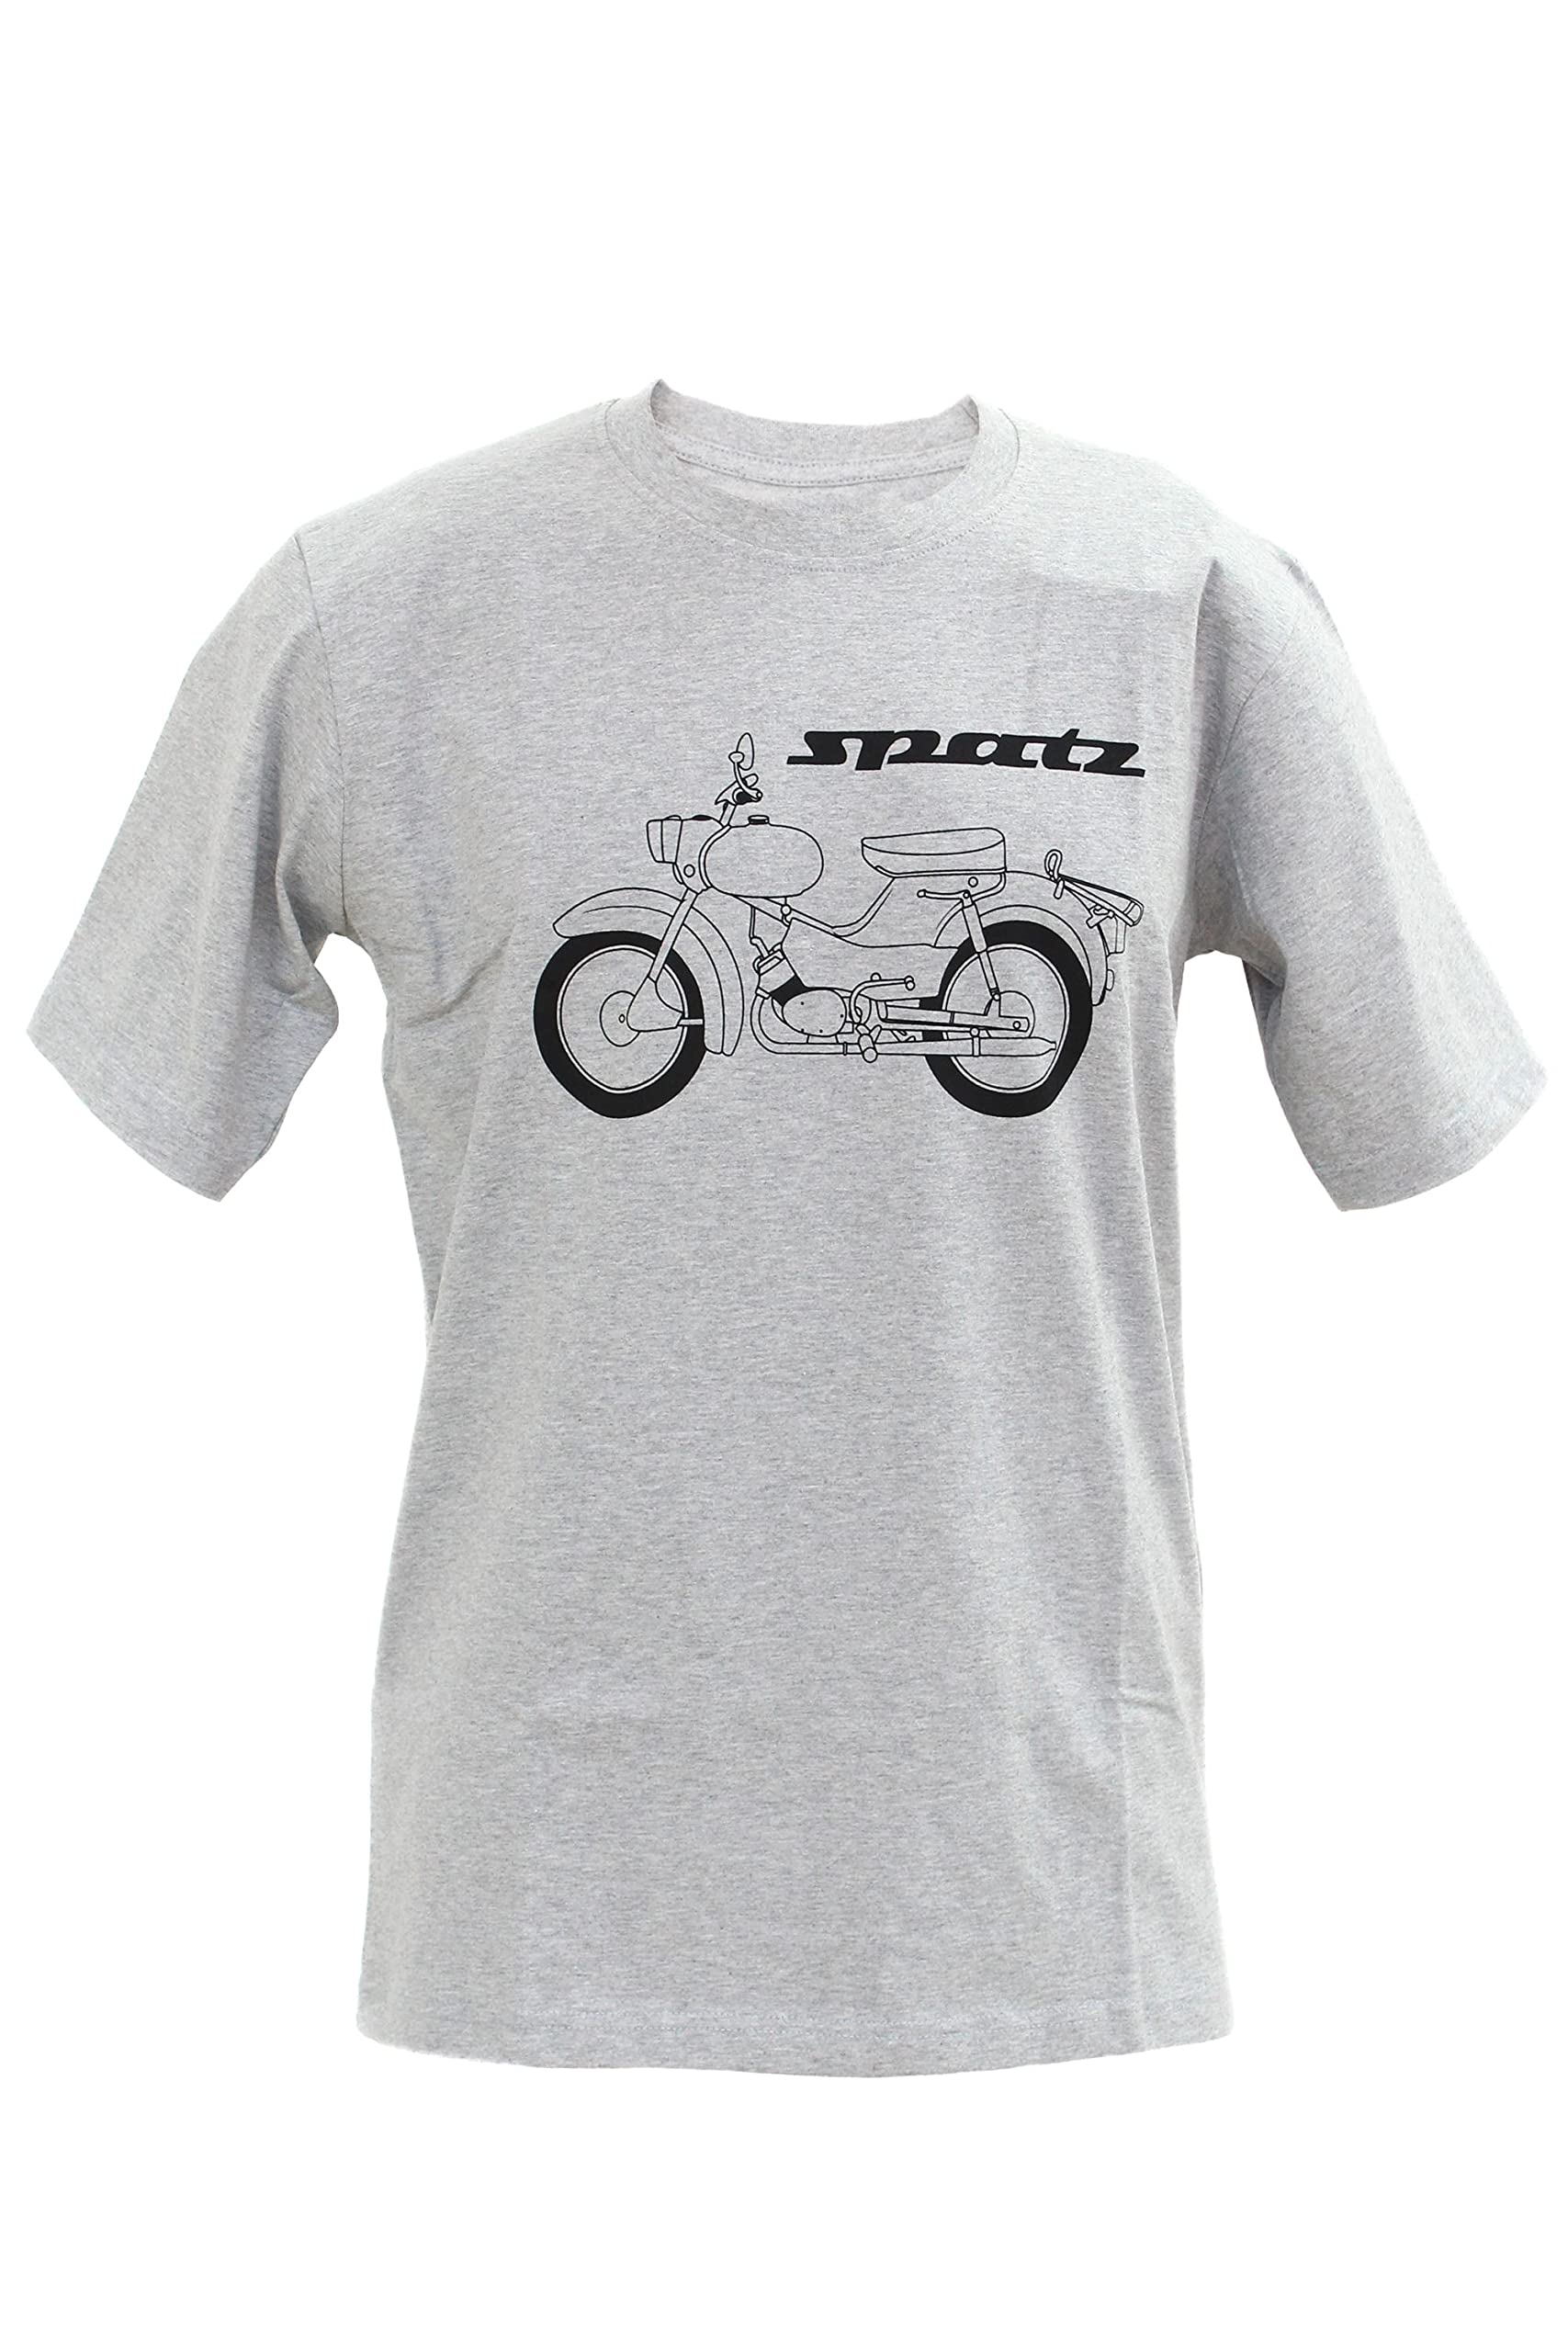 MZA T-Shirt, Farbe: hellgrau meliert, Größe: S - Motiv: Spatz Basic - 100% Baumwolle von MZA